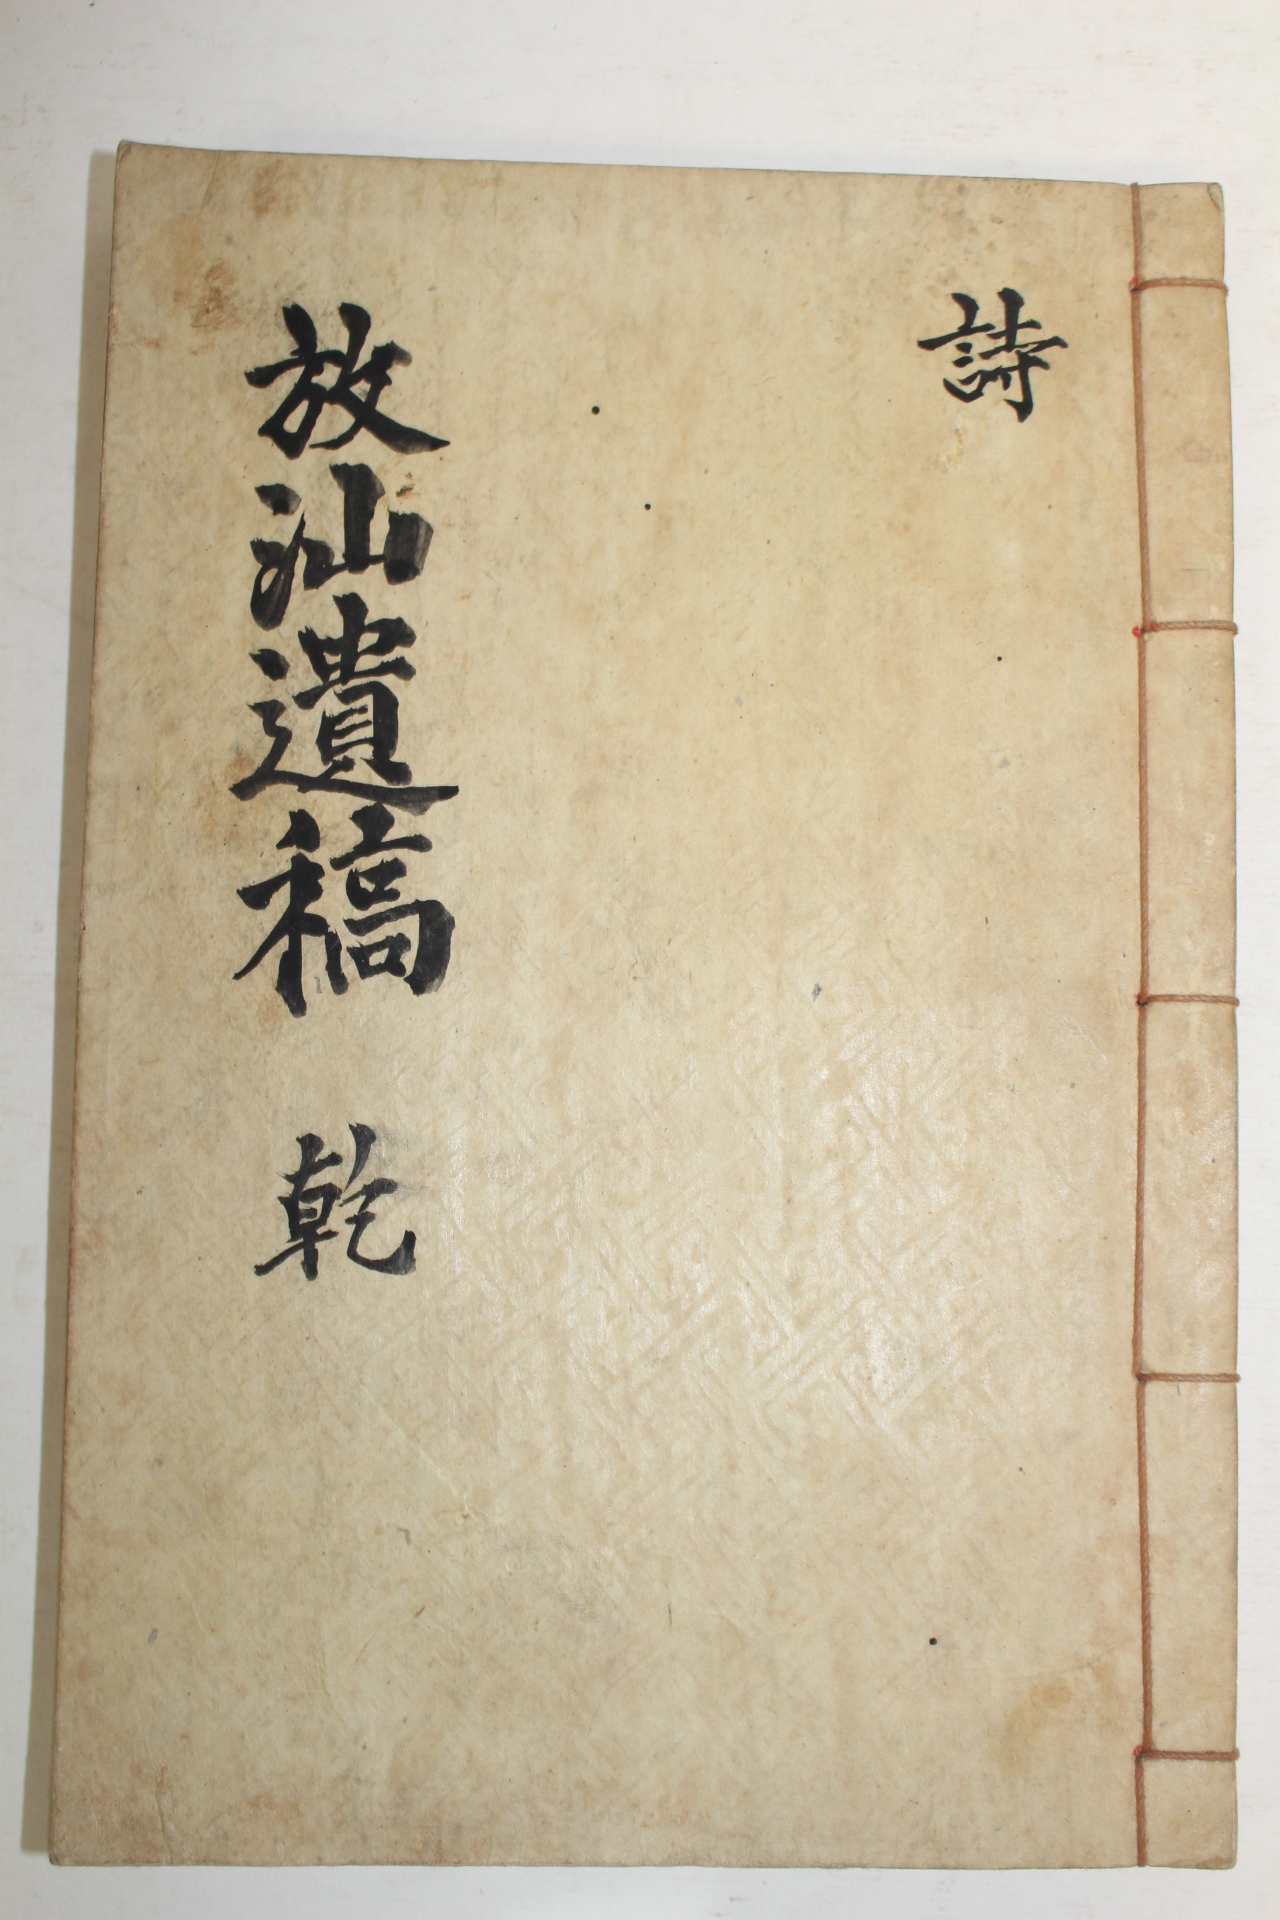 석판본 조봉원(趙鳳遠) 방산유고(放山遺稿)권1,2  1책